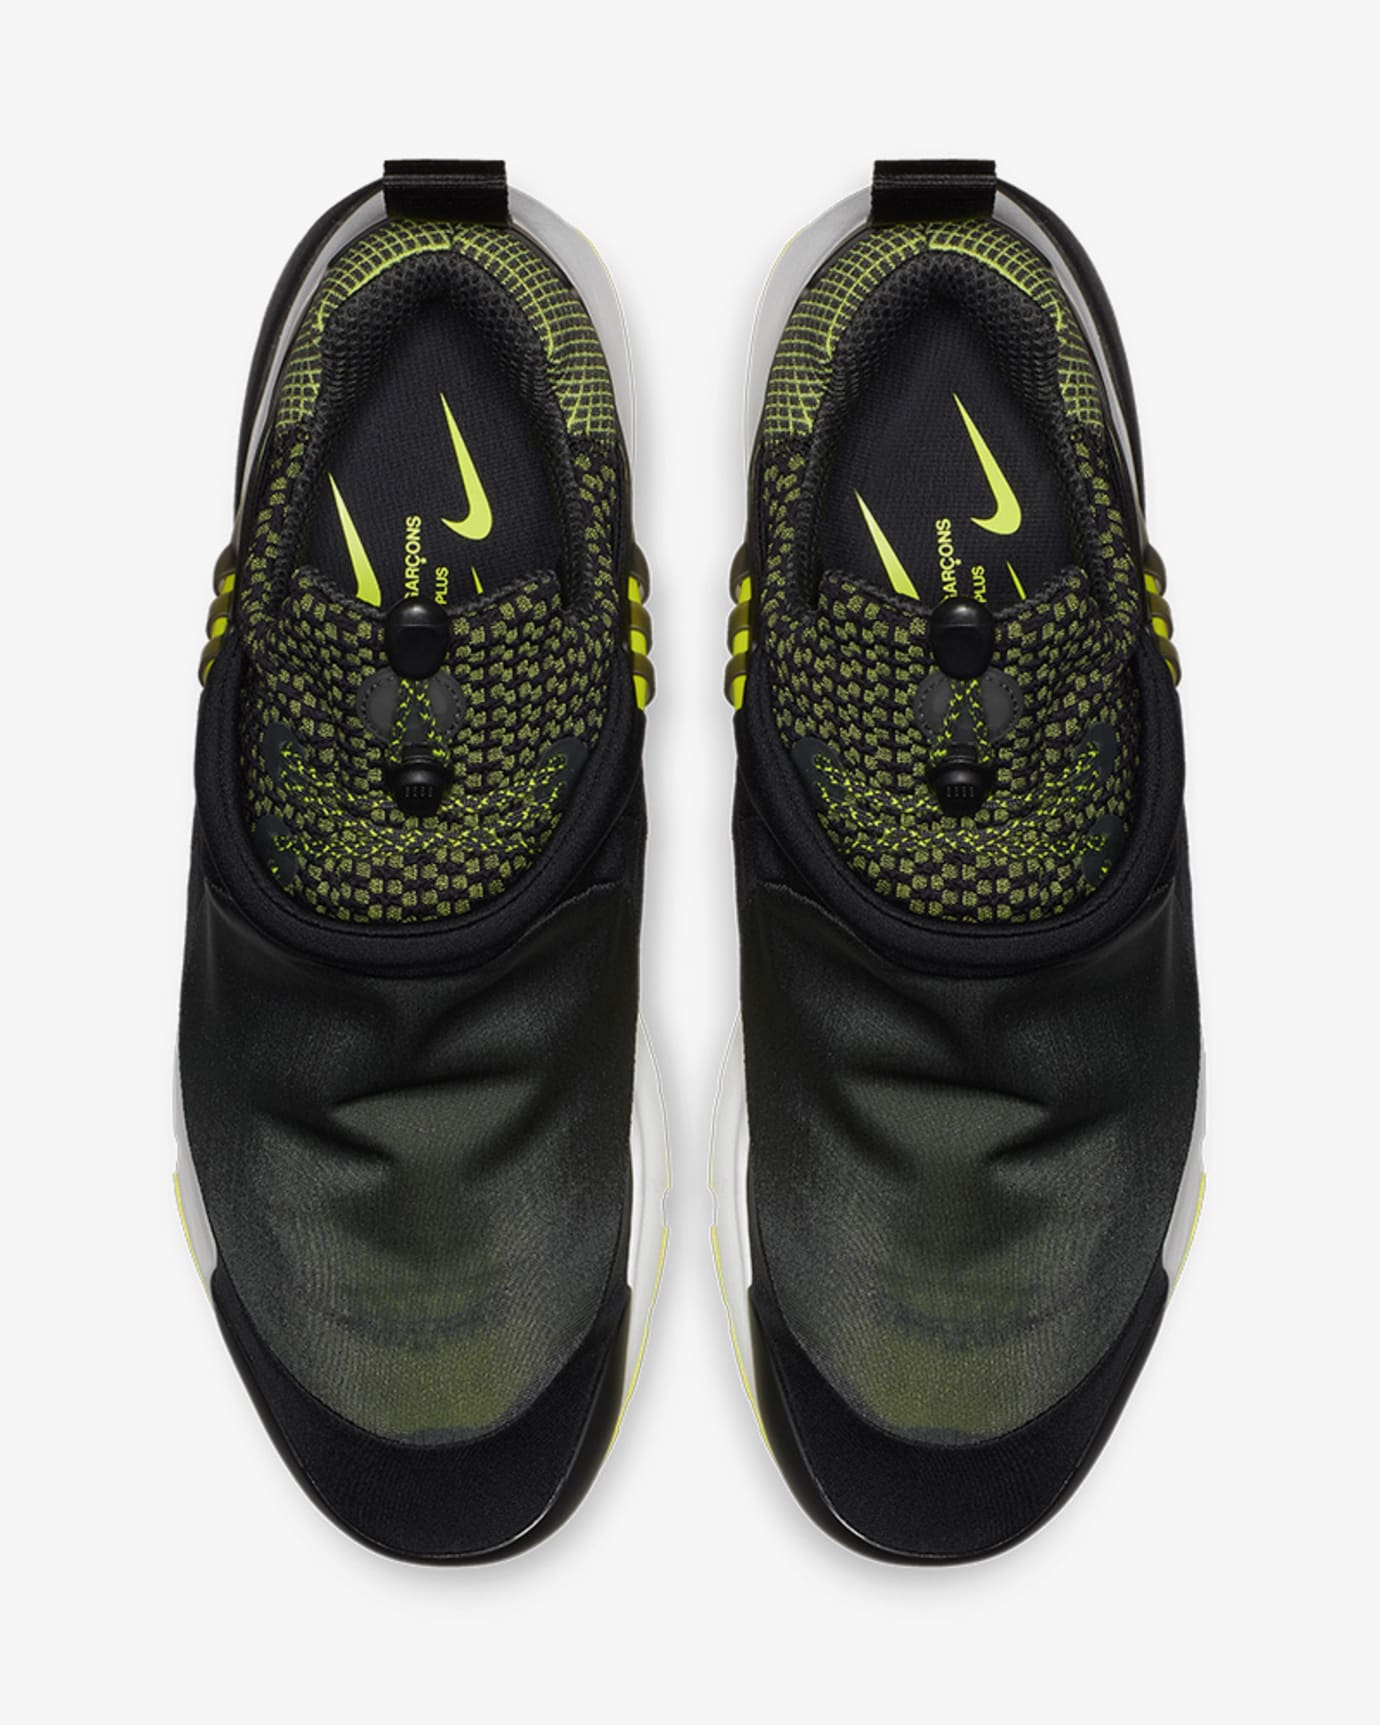 Comme des Garçons x Nike Air Presto Foot Tent Release Date | Sole ...